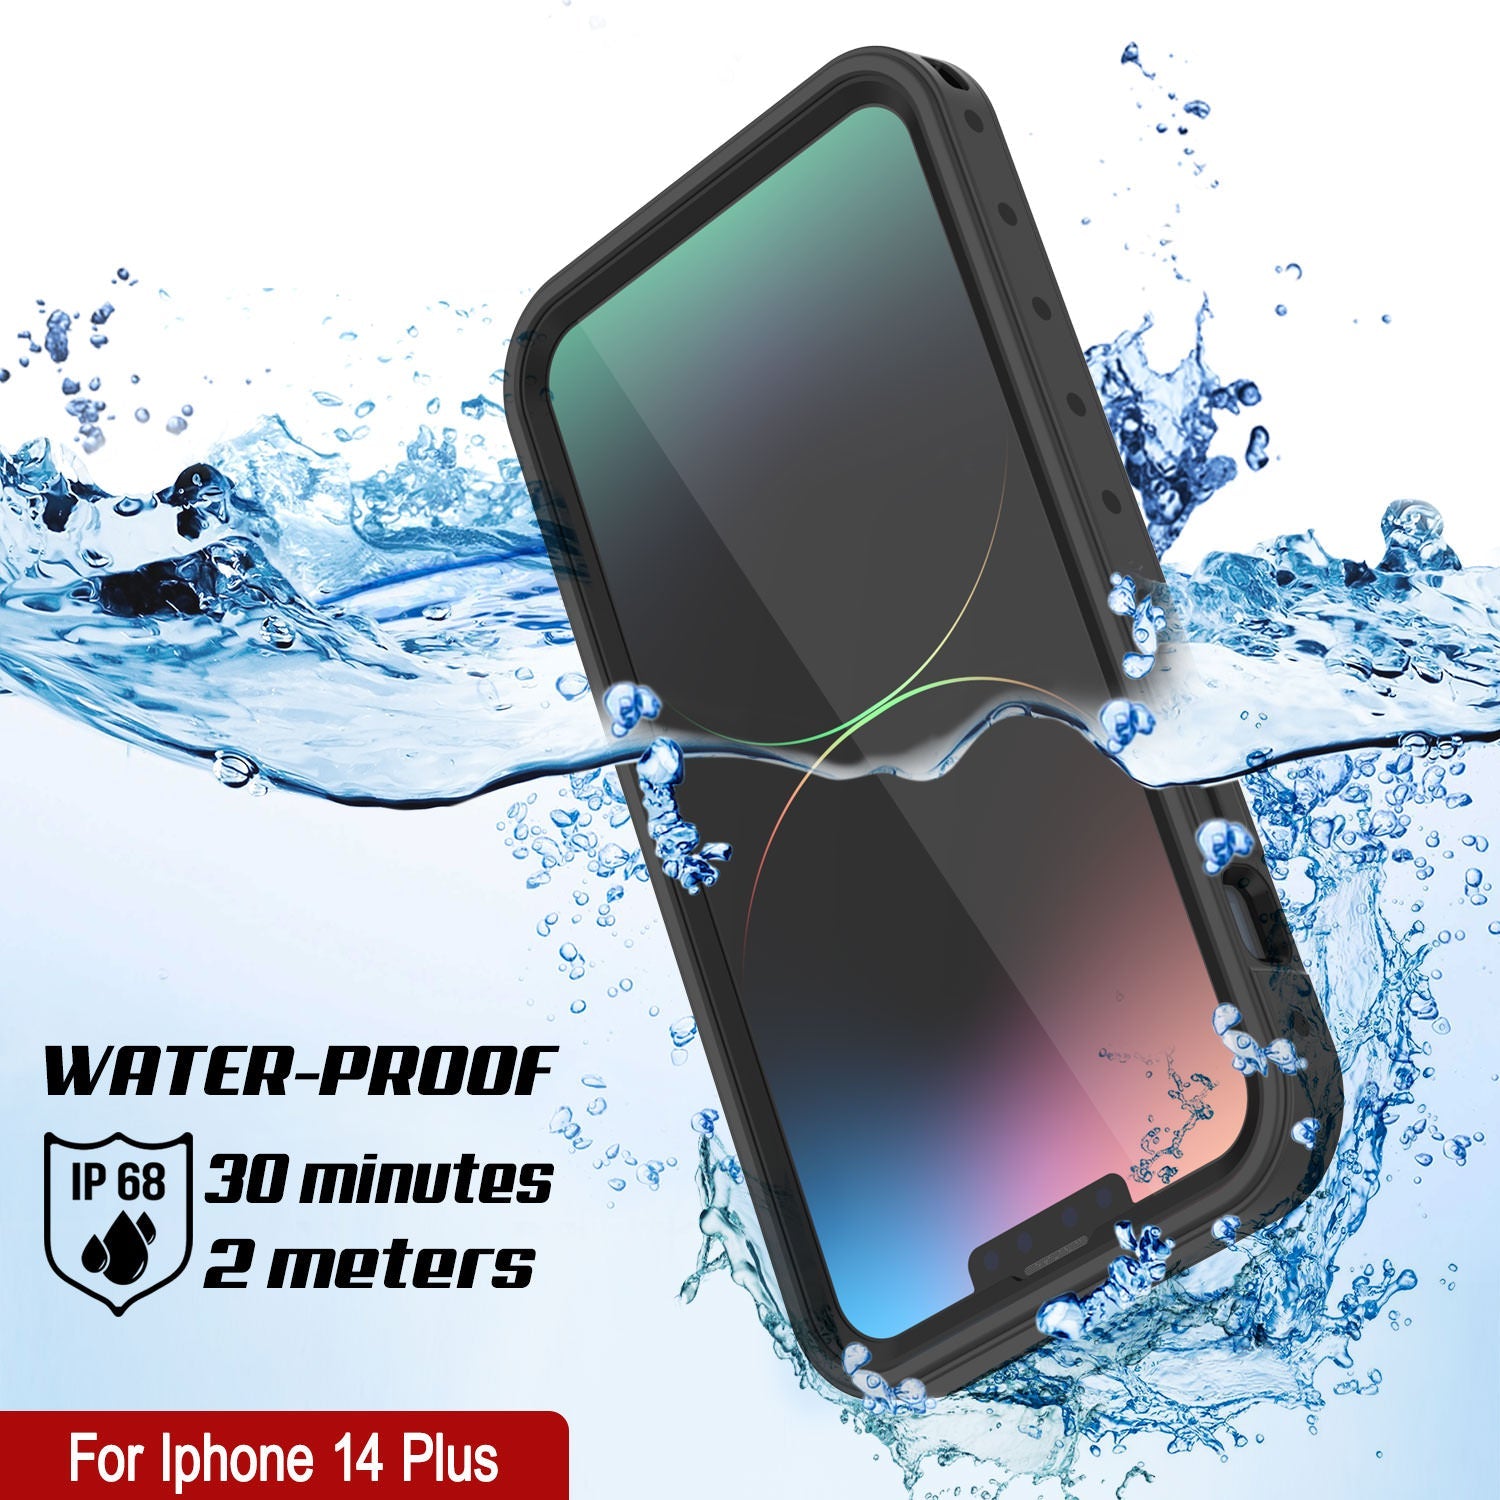 iPhone 14 Plus Waterproof IP68 Case, Punkcase [Black] [StudStar Series] [Slim Fit]